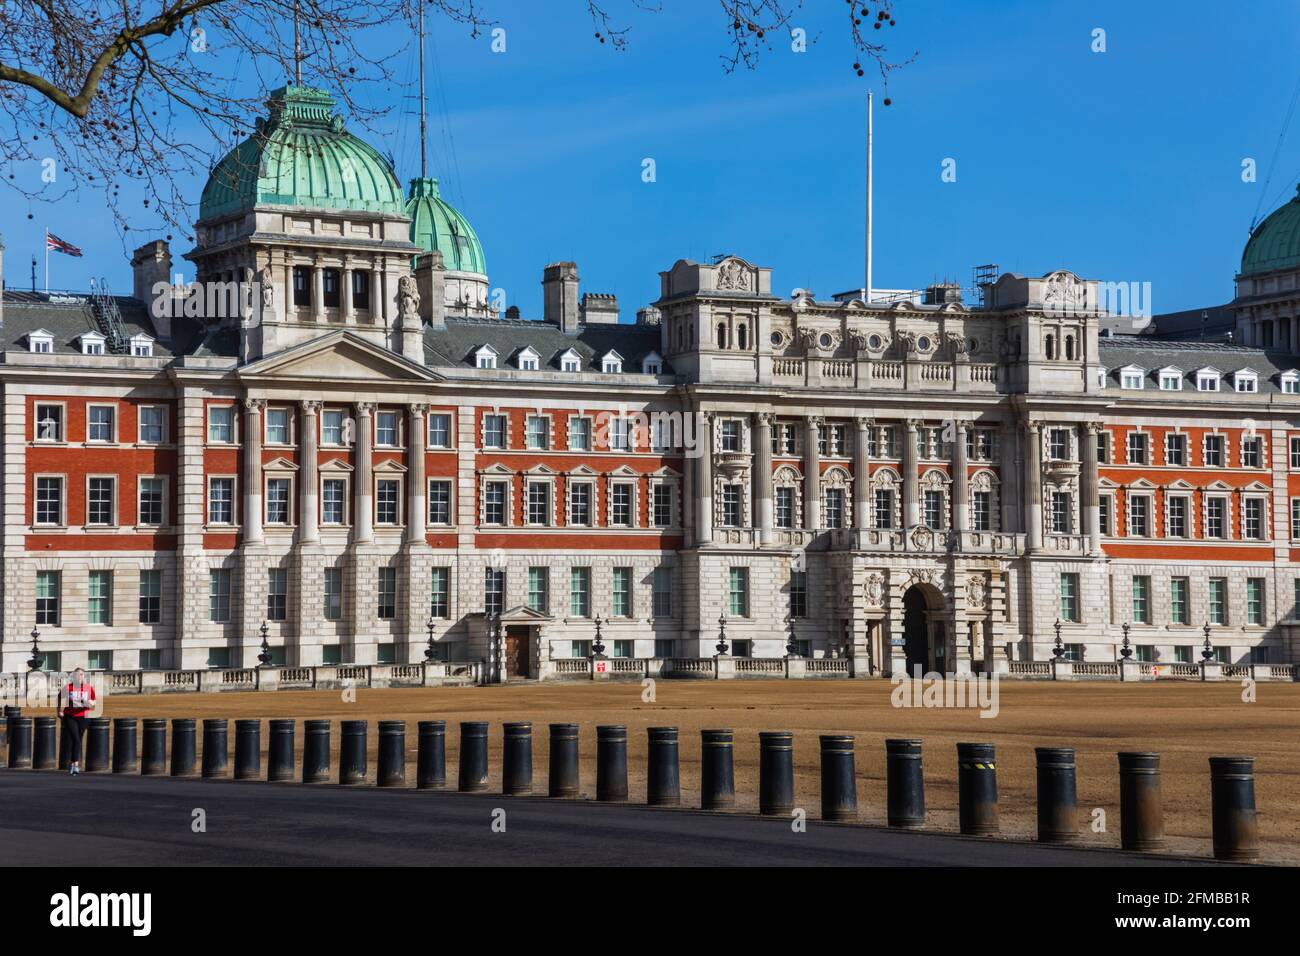 Angleterre, Londres, Westminster, Whitehall, Horseguards Parade et les anciens bâtiments de l'Amirauté Banque D'Images